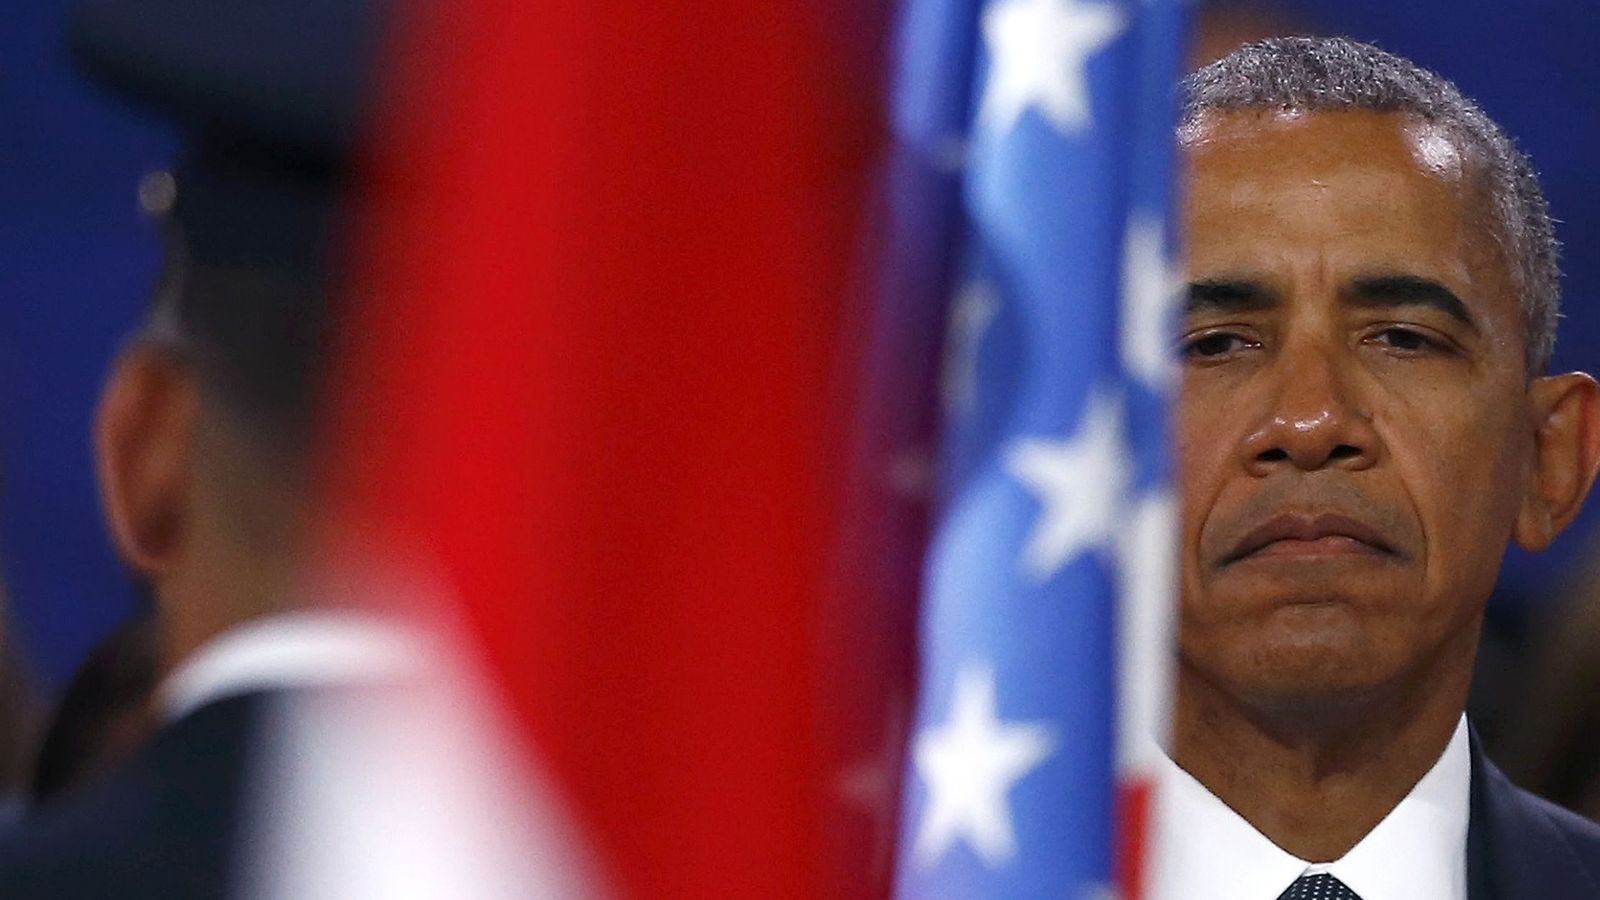 Foto: El presidente de EEUU, Barack Obama, guarda un minuto de silencio durante su visita a Varsovia. (Reuters)